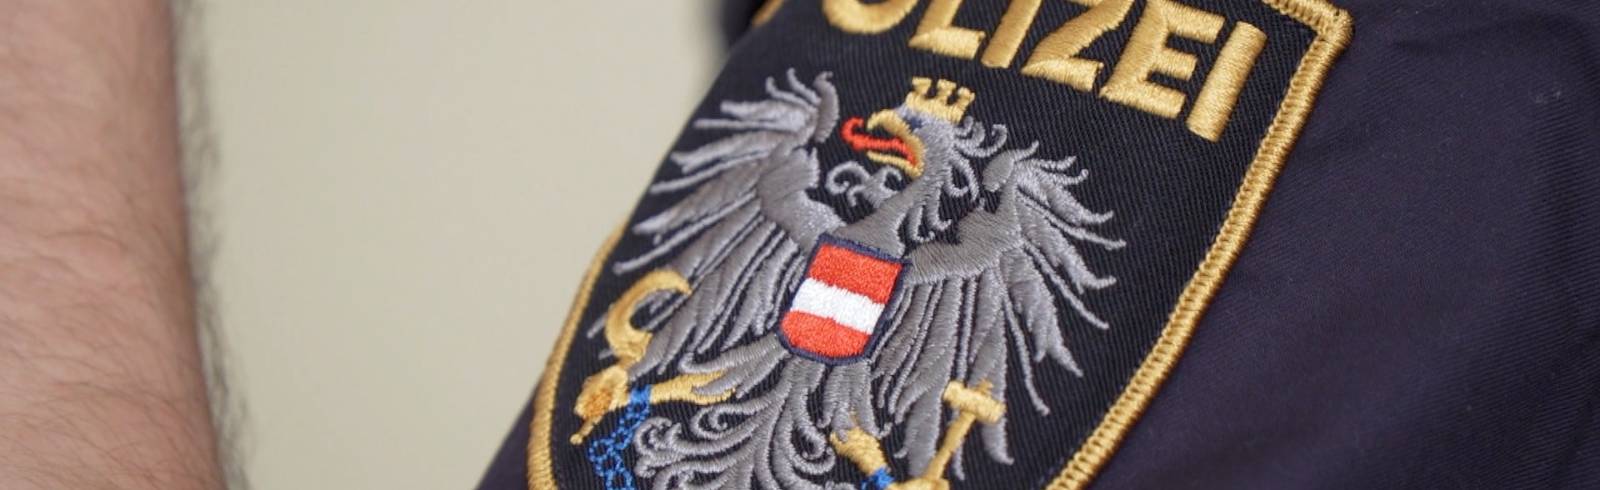 Polizei startet 24-Stunden-Wien Twitter-Marathon